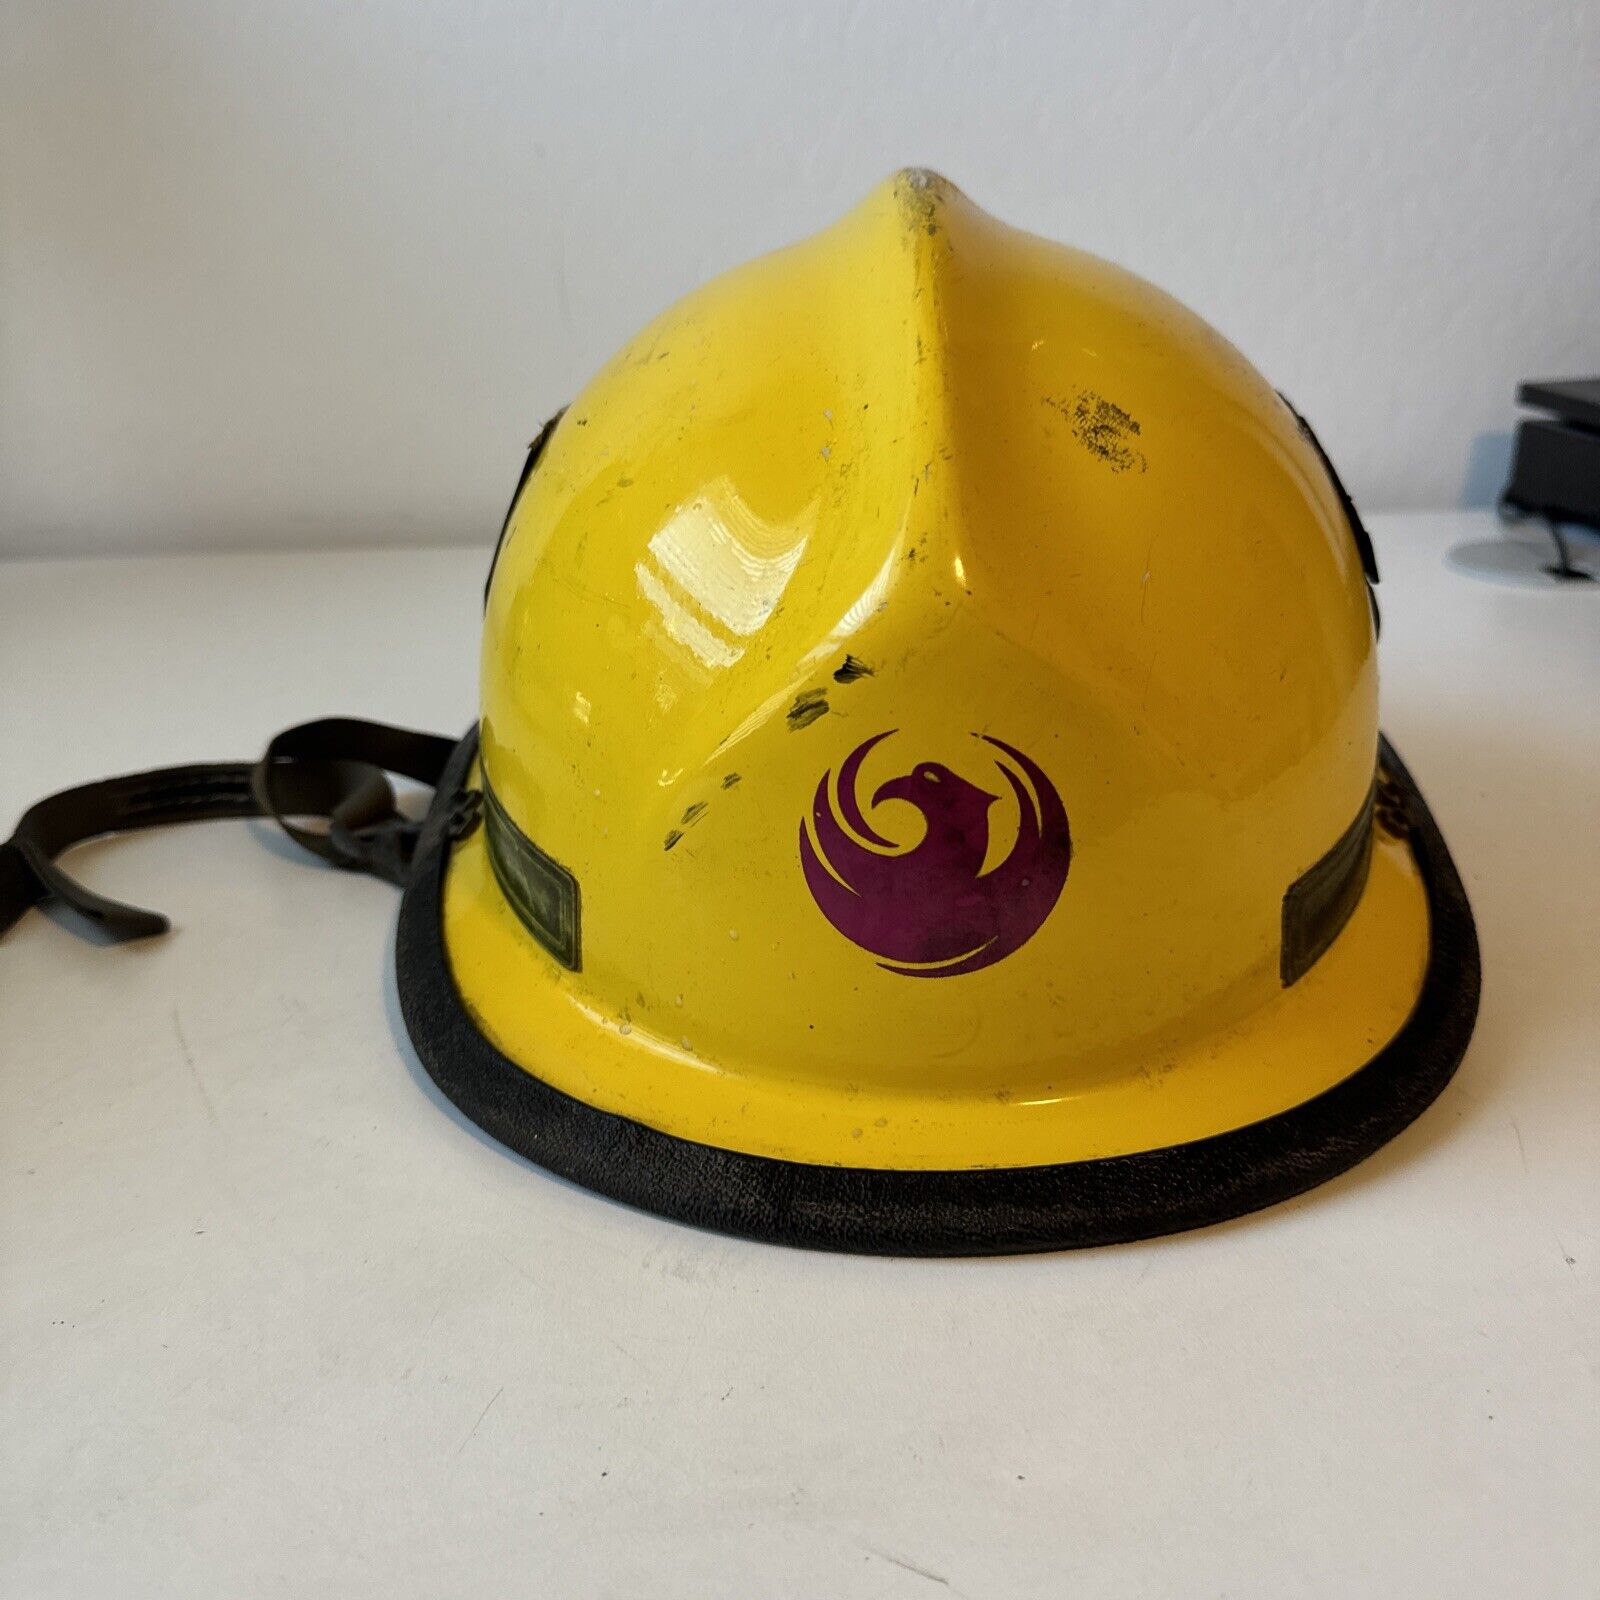 ARIZONA - City of Phoenix Fire Dept. - Helmet